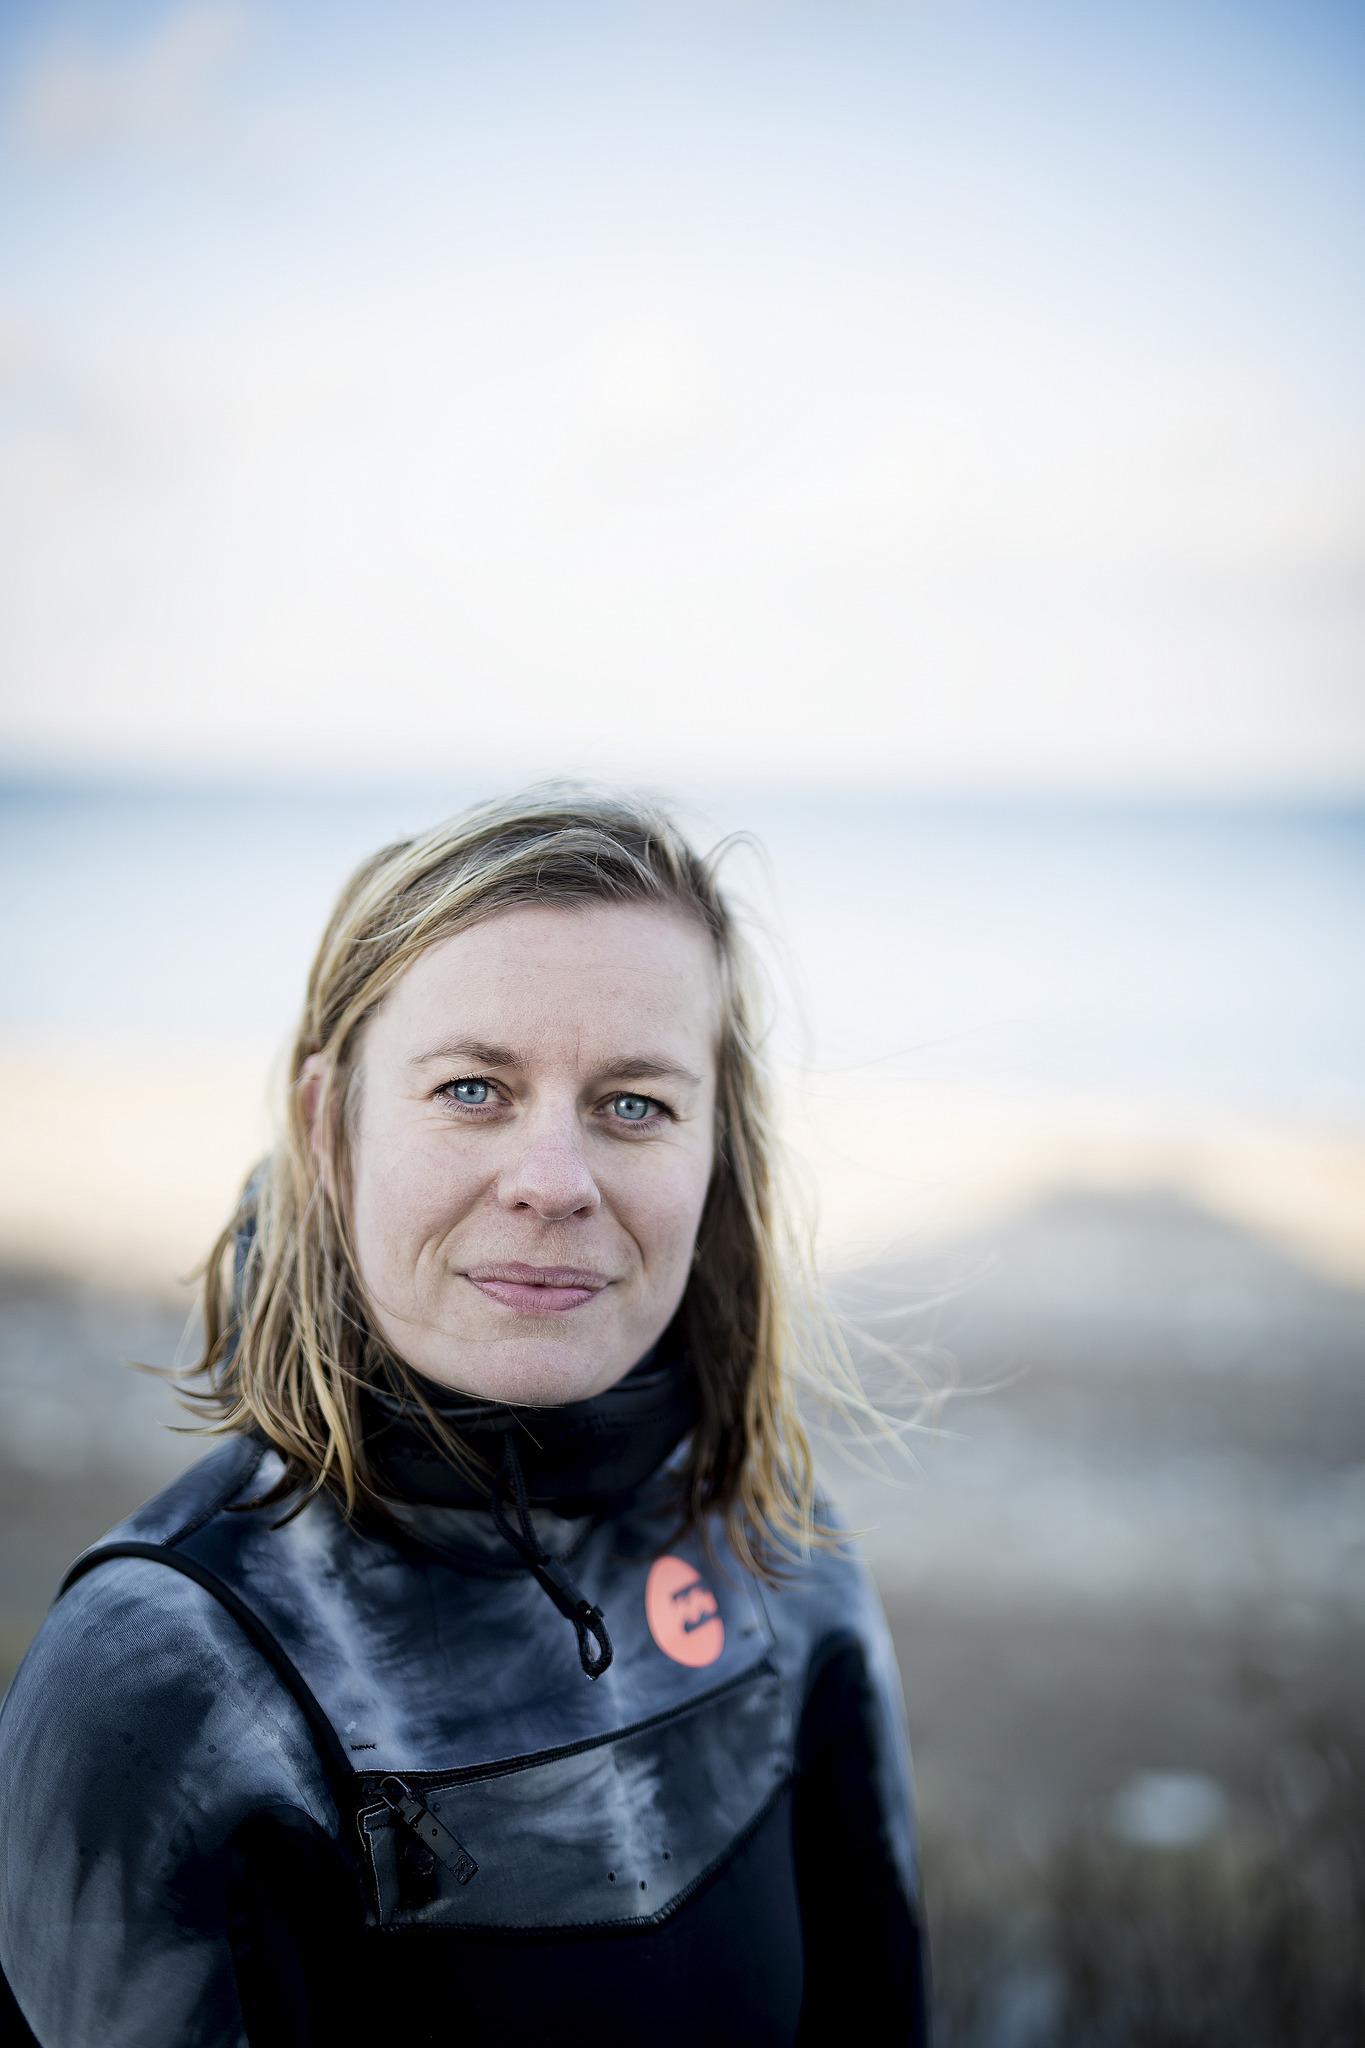 Lina Hundebøll Jespersen er KBU’er og fællestillidsrepræsentant for de yngre læger på sygehuset. Og bor sammen med flere af de andre KBU’ere i surferparadiset “Cold Hawaii” i Klitmøller. Foto: Cathrine Ertmann